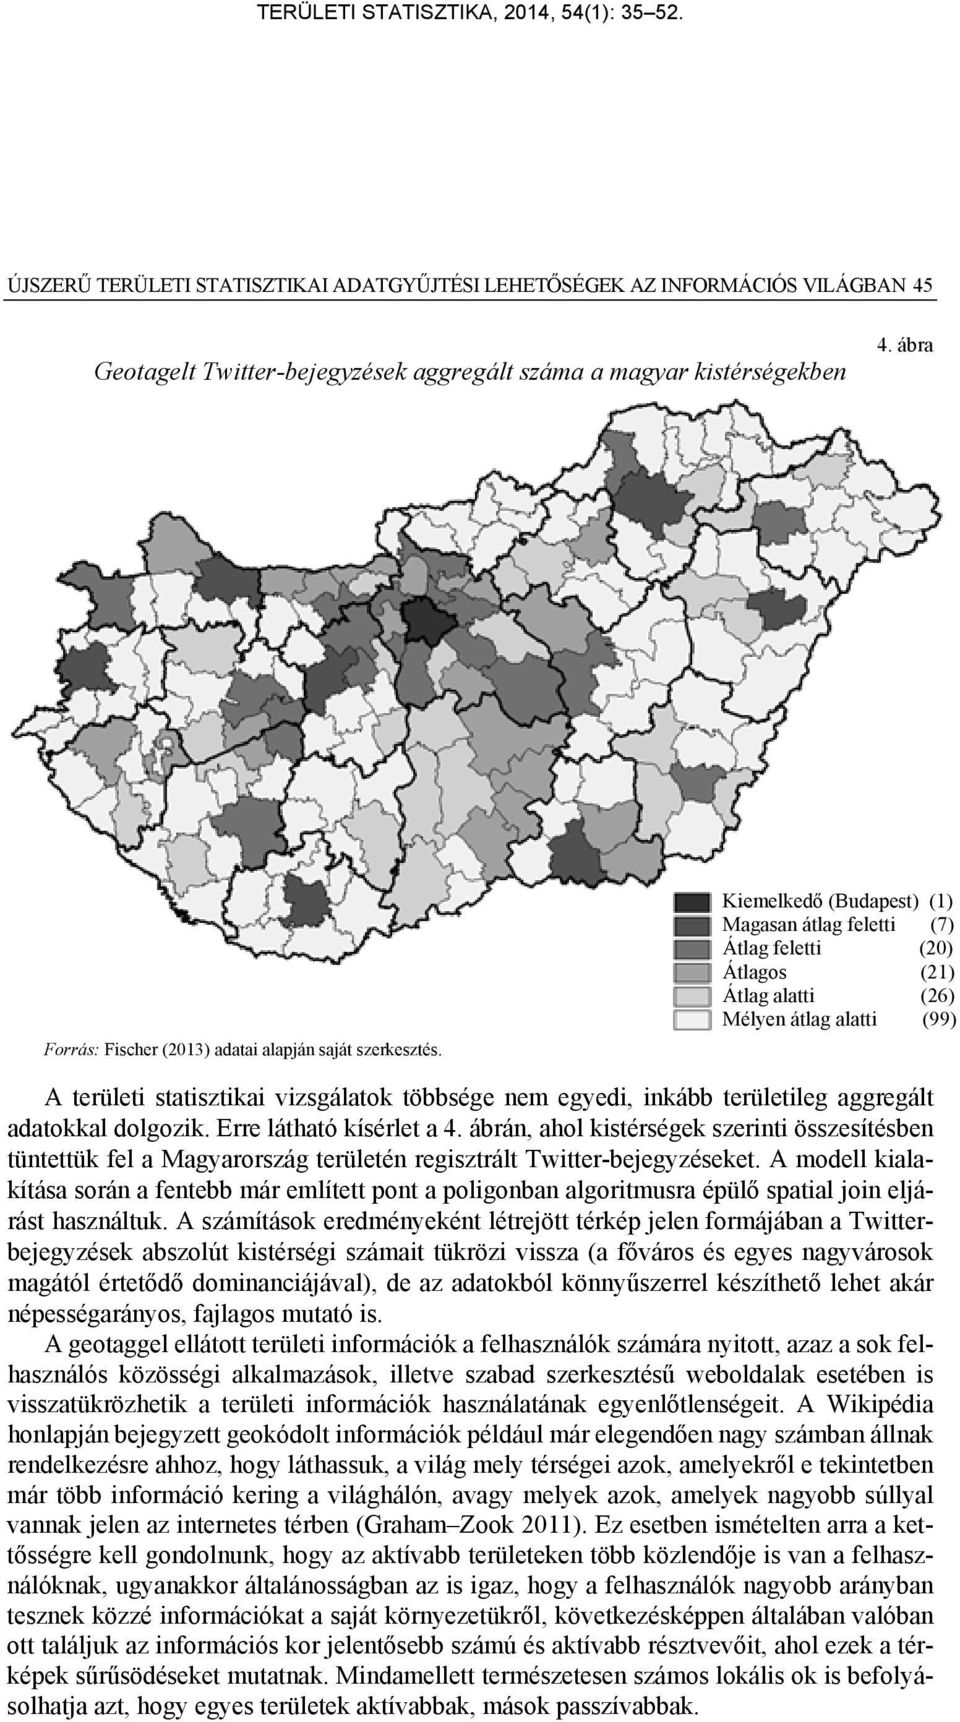 Kiemelkedő (Budapest) (1) Magasan átlag feletti (7) Átlag feletti (20) Átlagos (21) Átlag alatti (26) Mélyen átlag alatti (99) A területi statisztikai vizsgálatok többsége nem egyedi, inkább